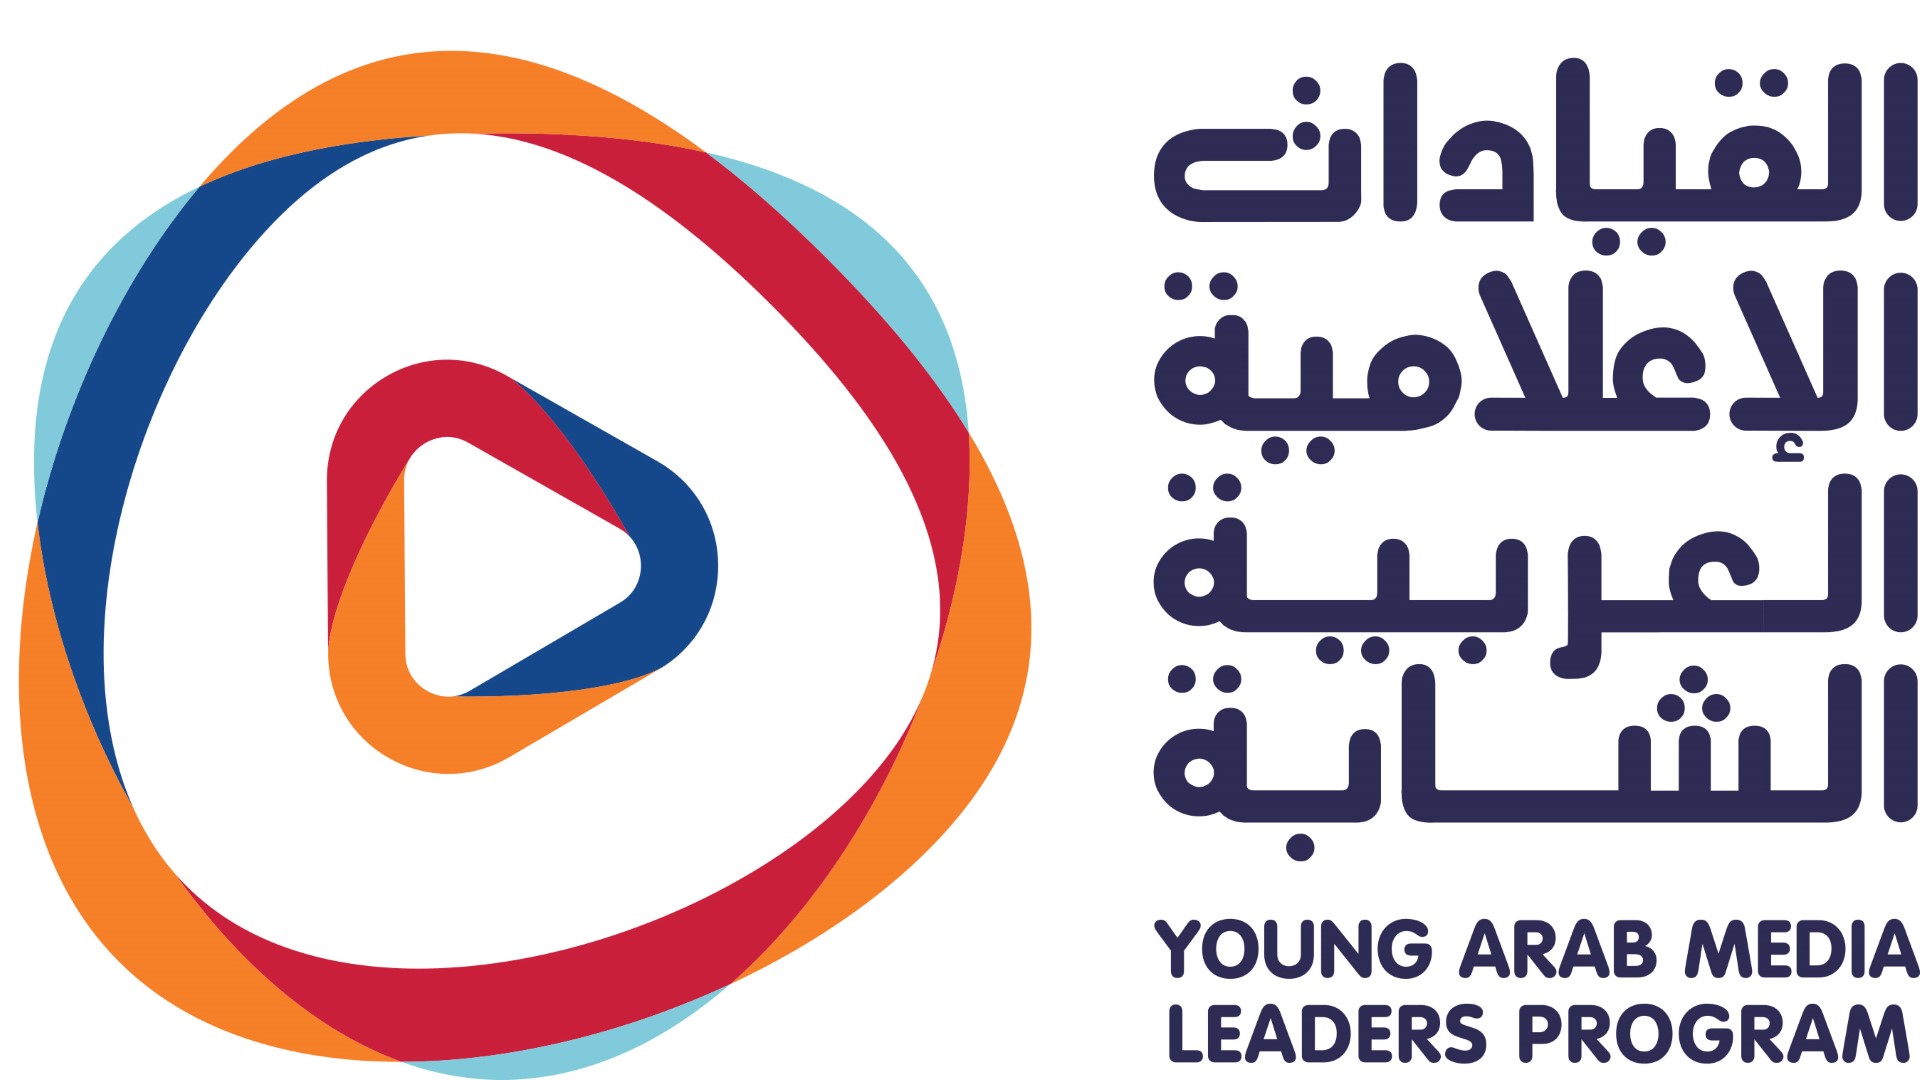 برنامج "القيادات الإعلامية العربية الشابة" ينطلق في دبي غدا بمشاركة 100 شاب وشابة